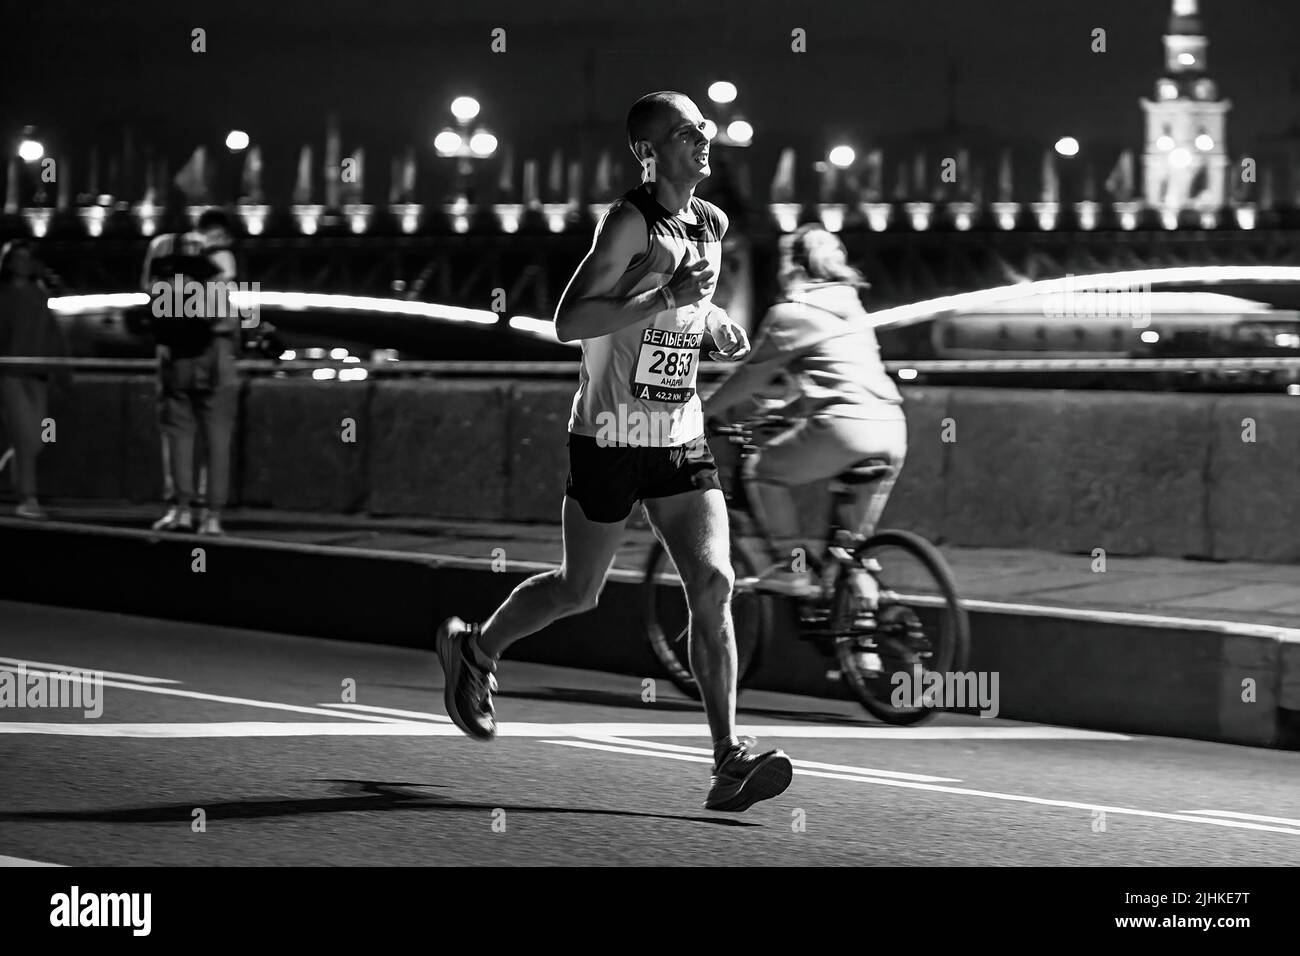 Saint-Pétersbourg, Russie - 11 juin 2022: Les nuits blanches du marathon de course d'athlète masculin Banque D'Images